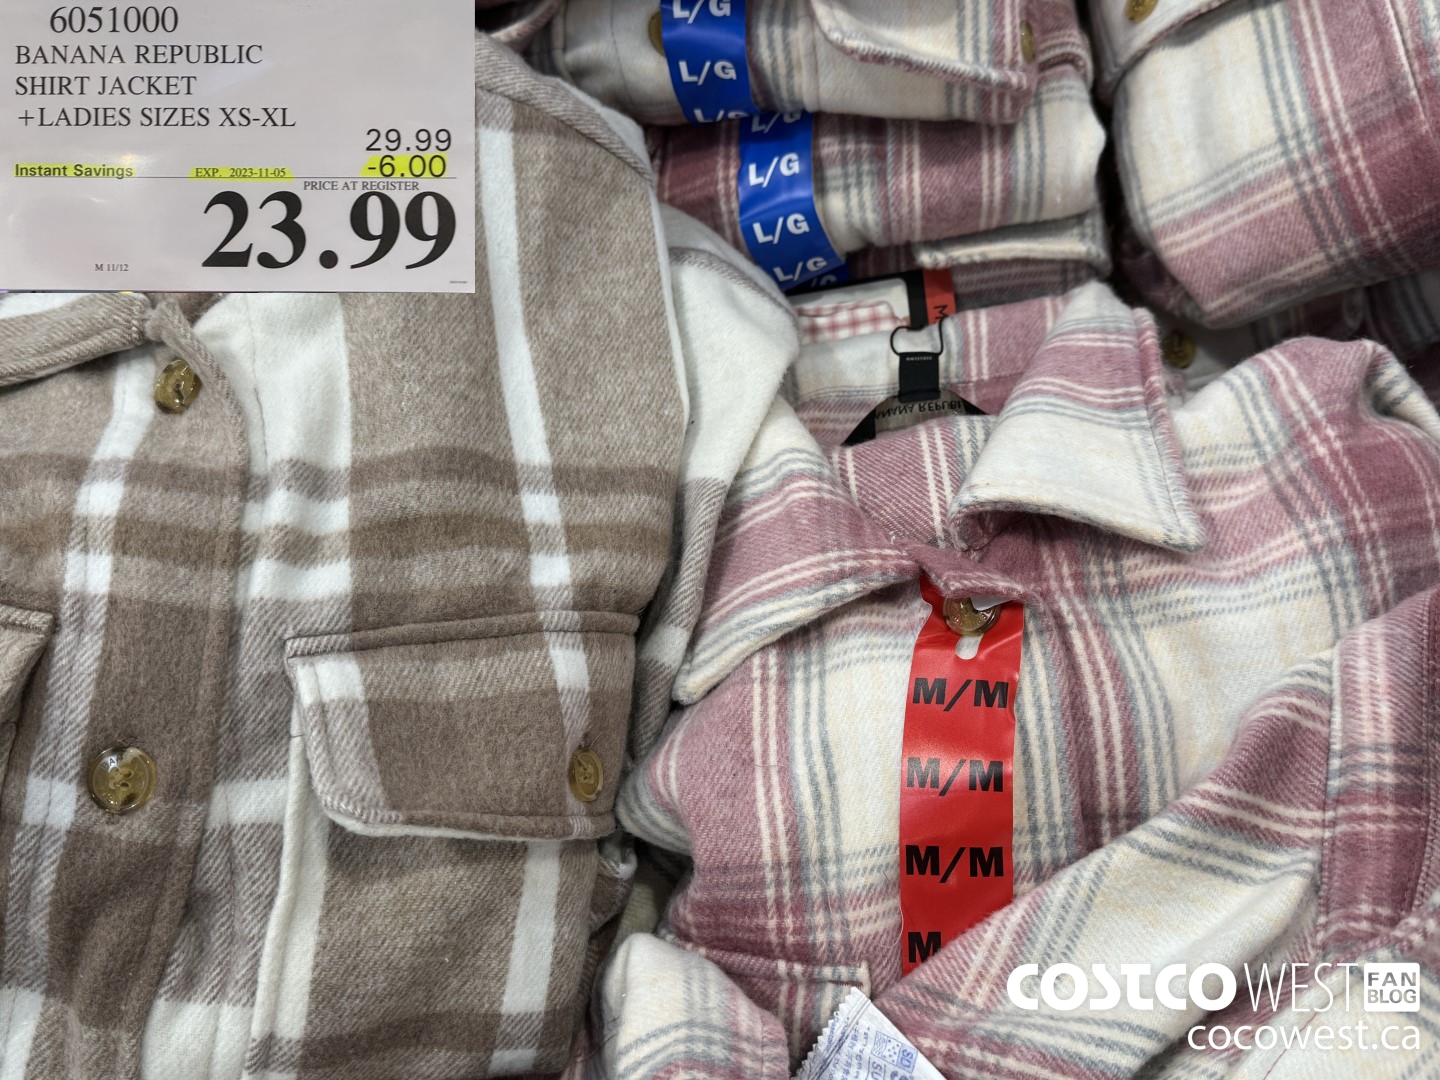 Costco Fall 2023 Clothing Superpost – Jackets, Sweaters, Winter Gear -  Costco West Fan Blog